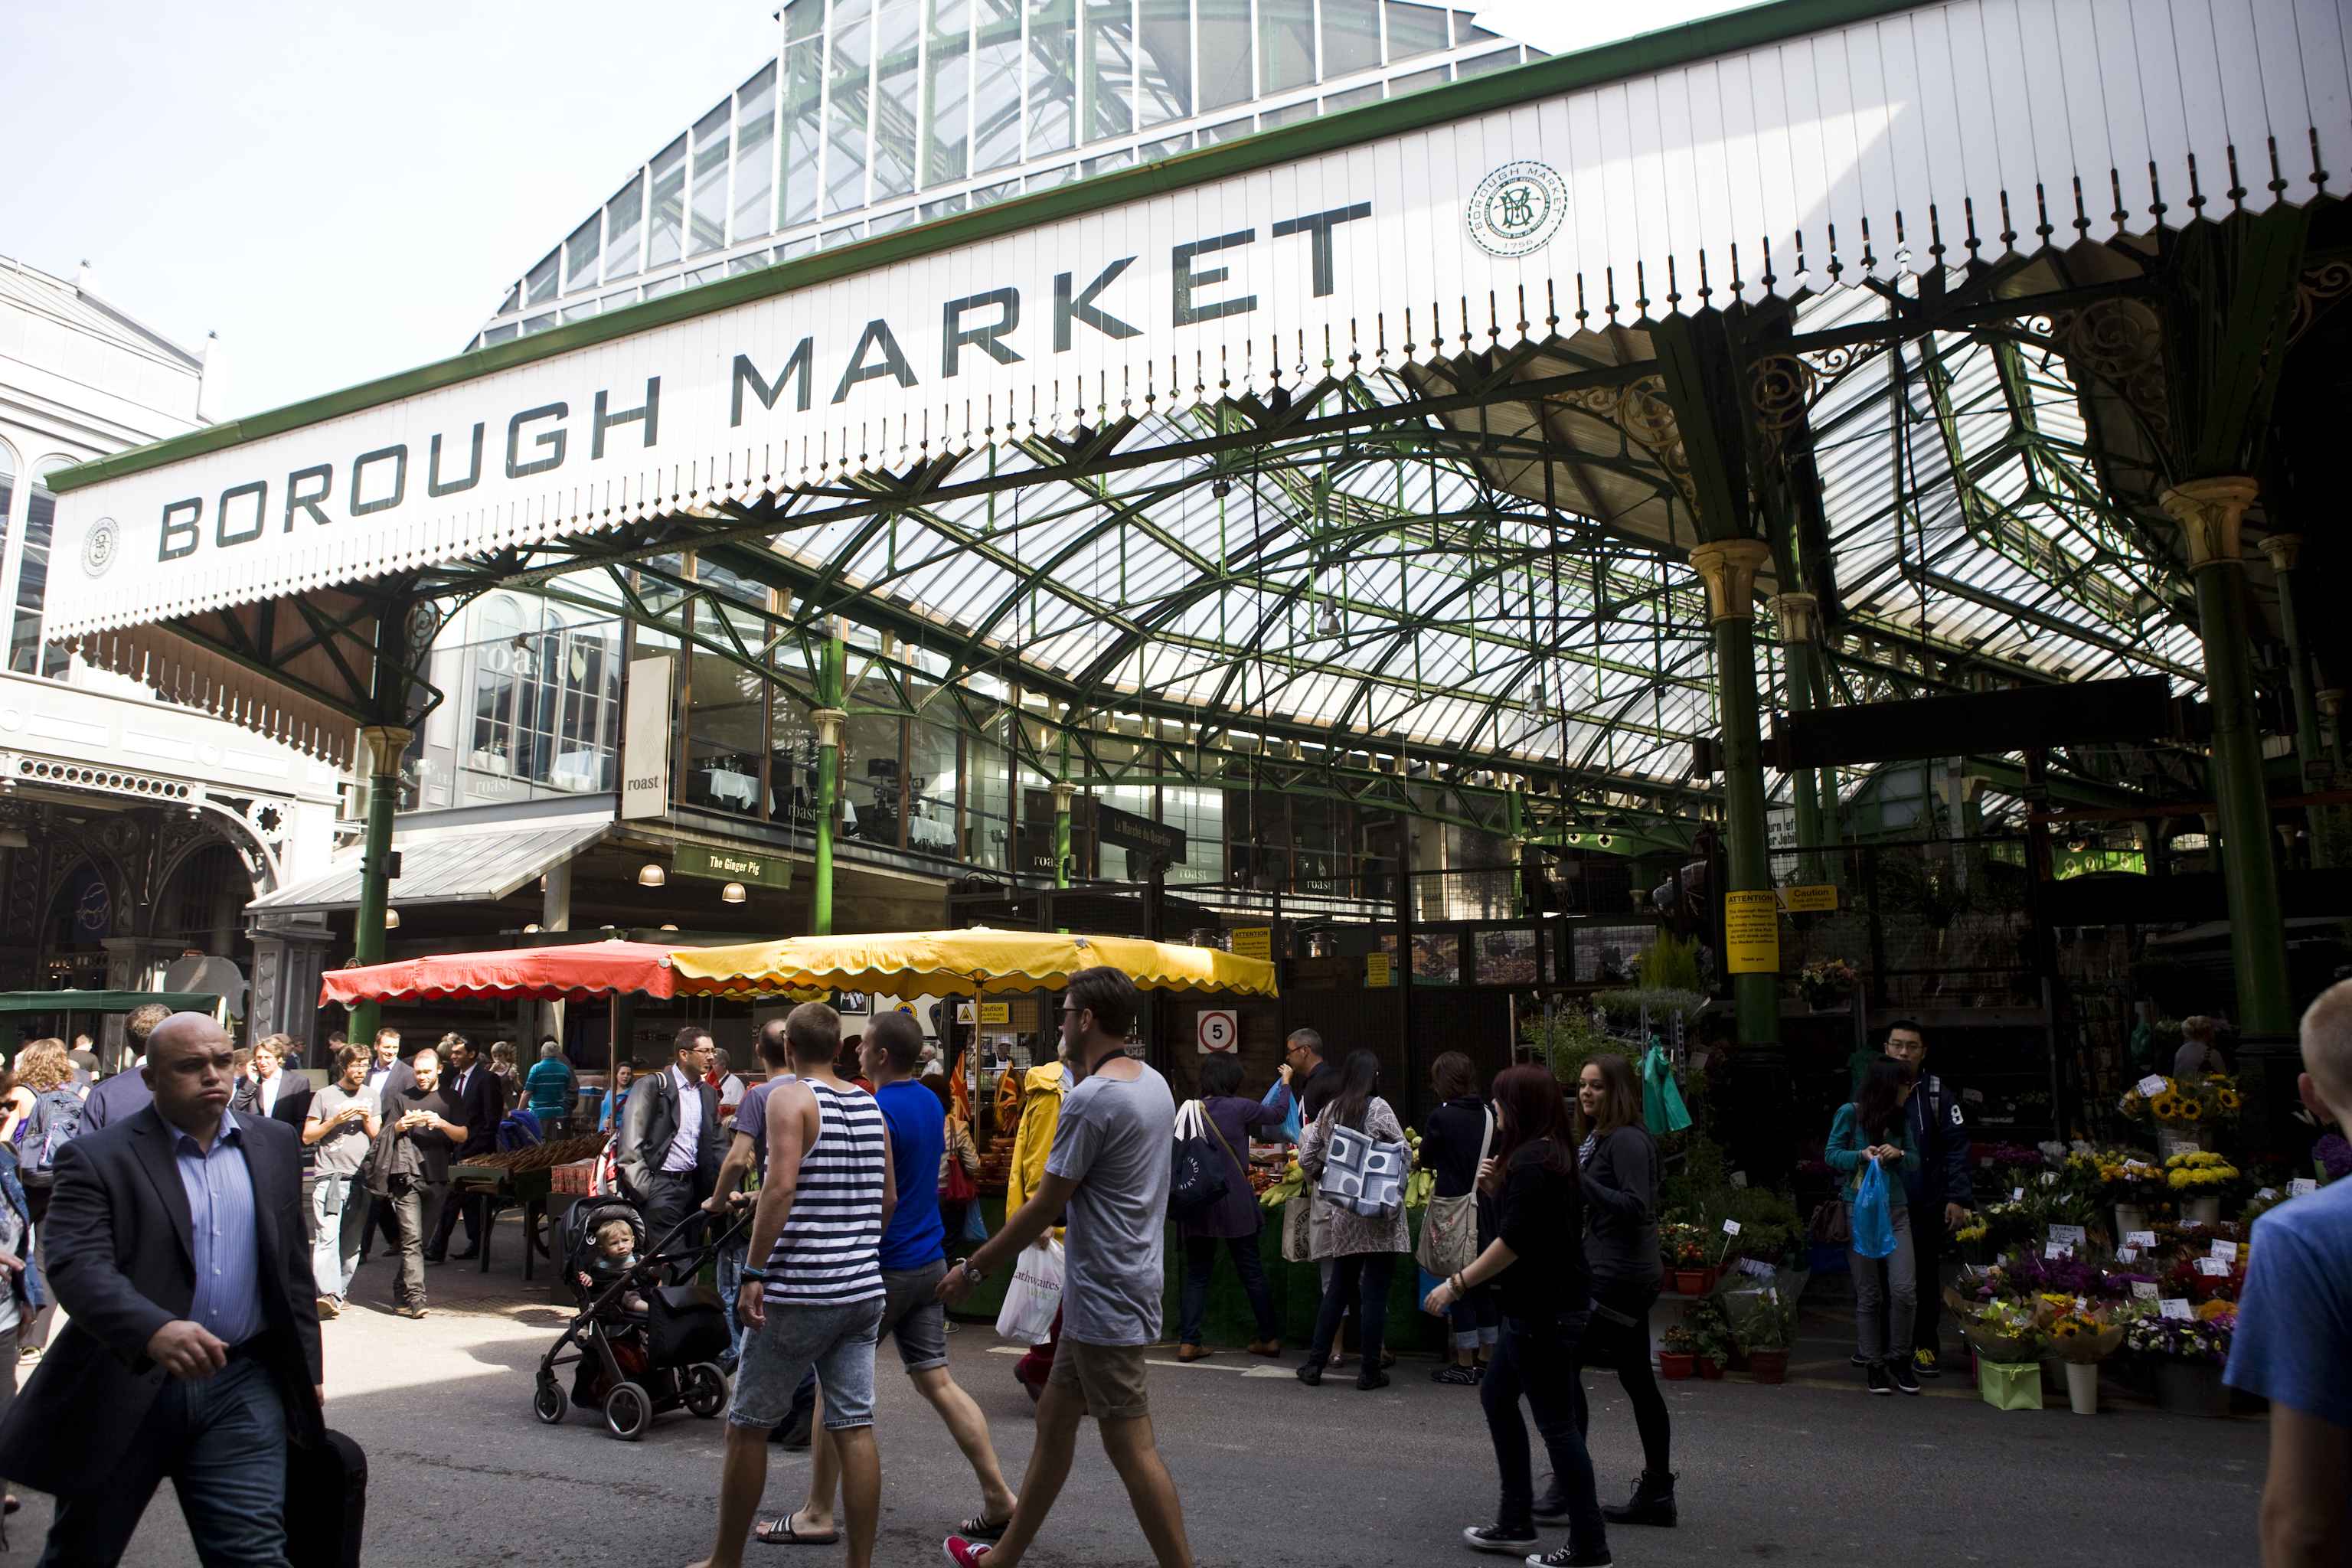 Borough-Market-Image1